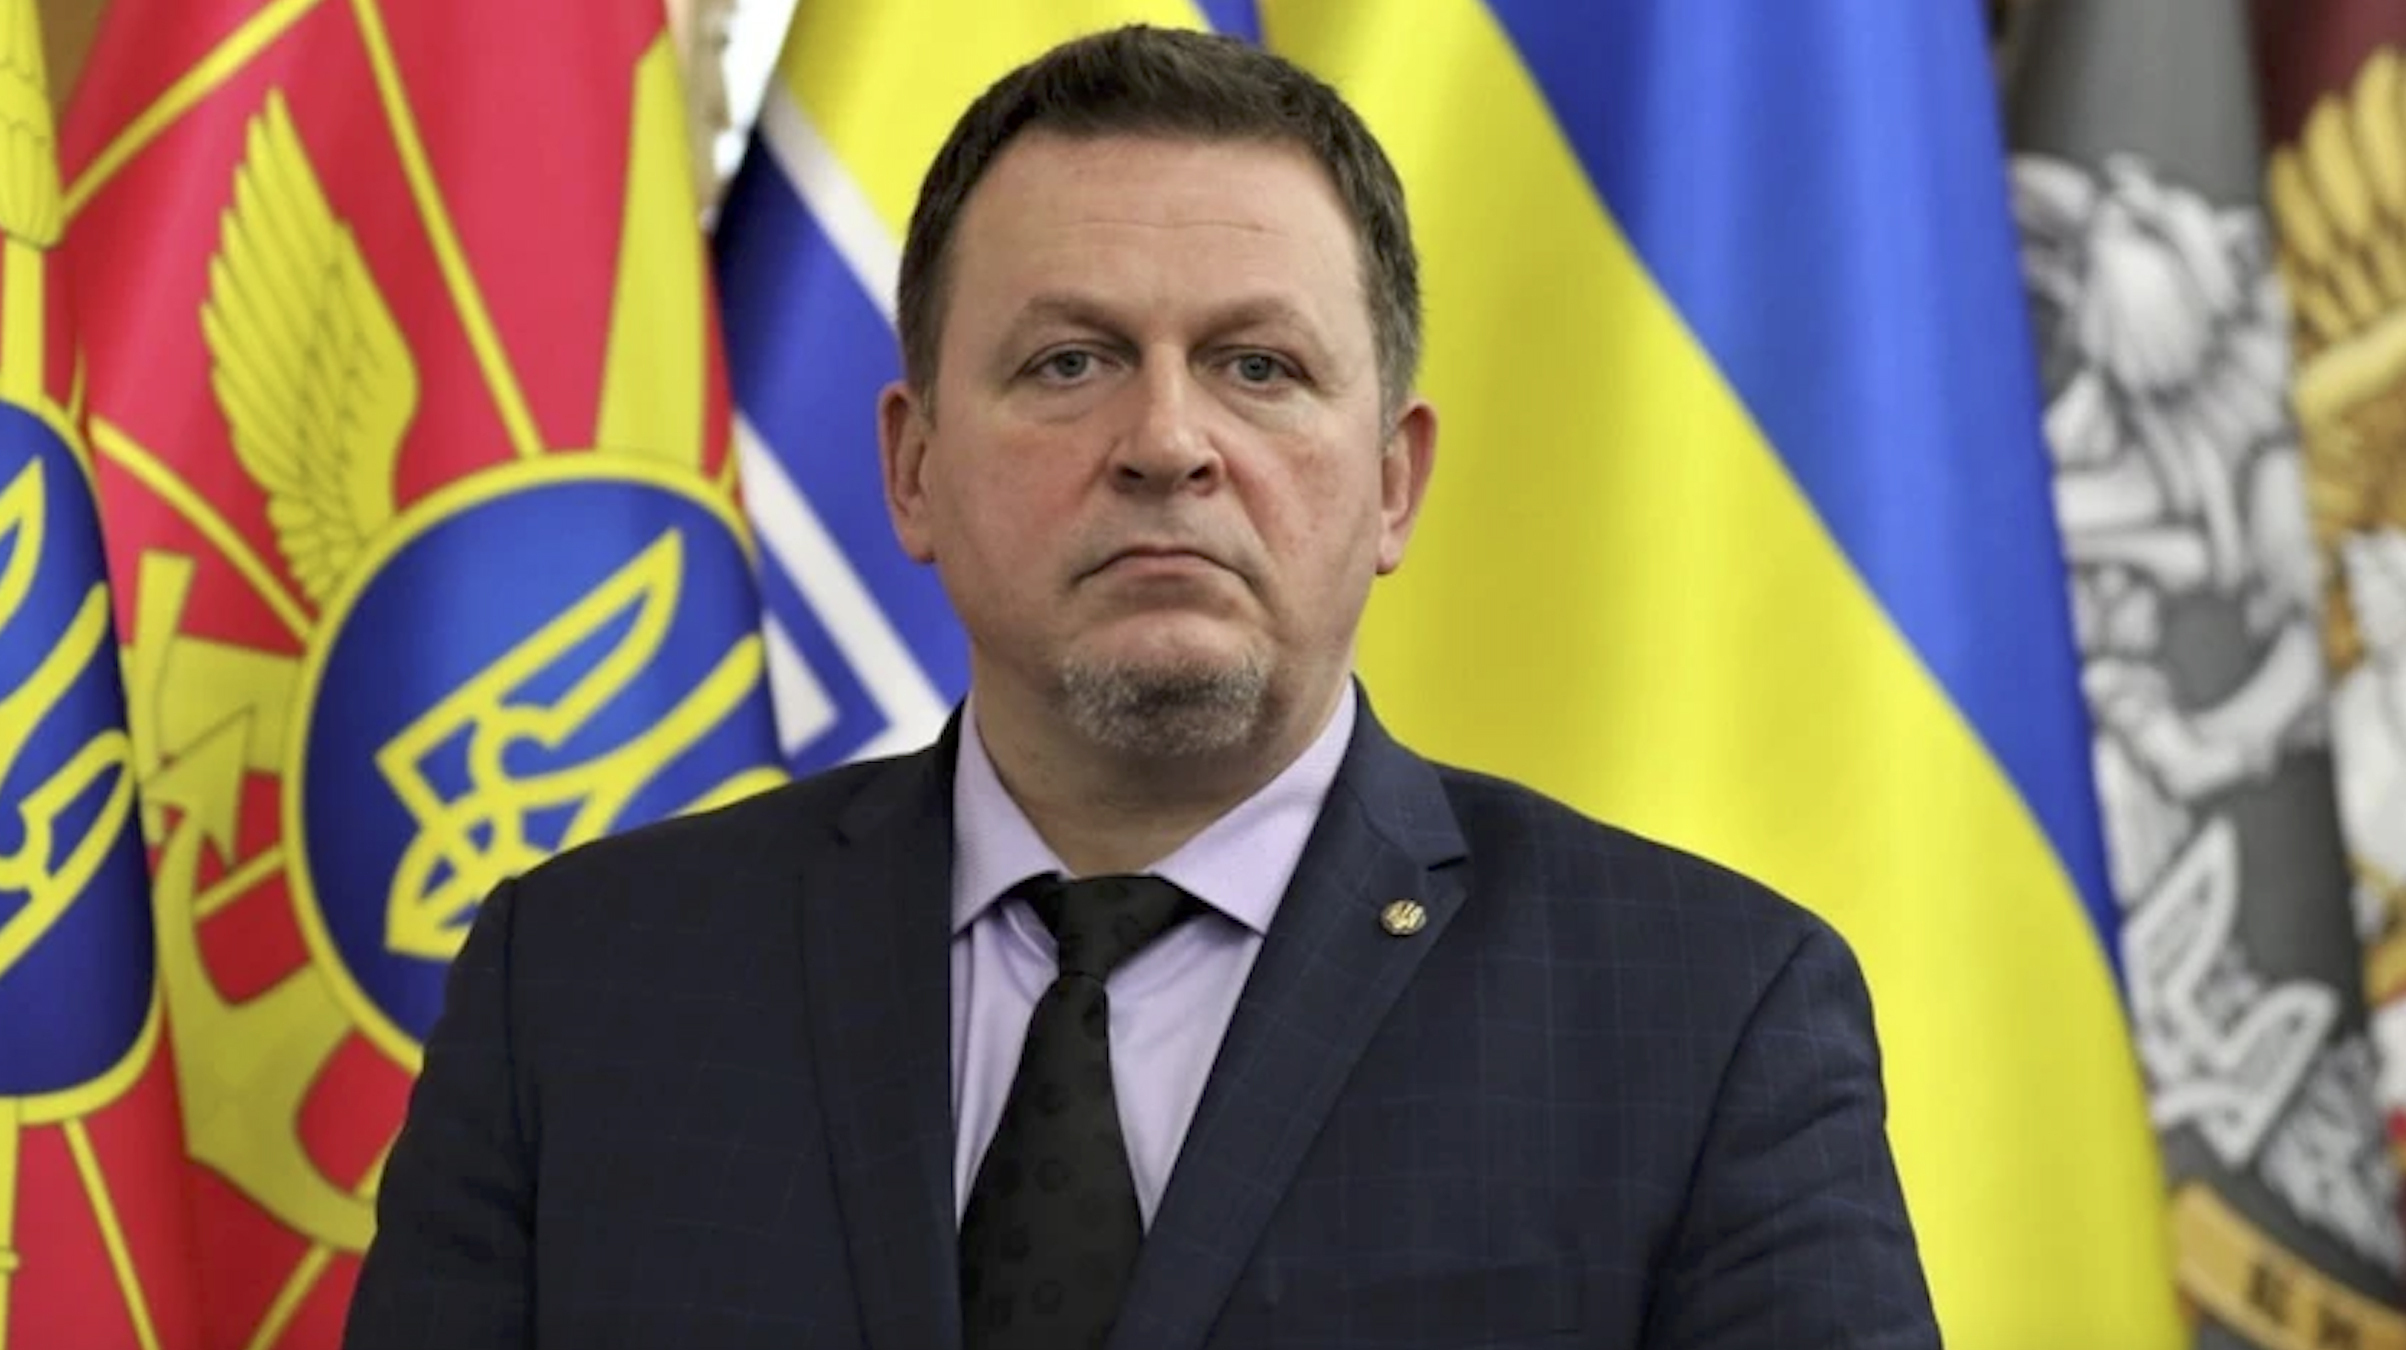 Las autoridades ucranianas confirmaron, además, la detención y cese del viceministro de Infraestructuras y Desarrollo Comunitario, Vasil Lozinski. (AP)